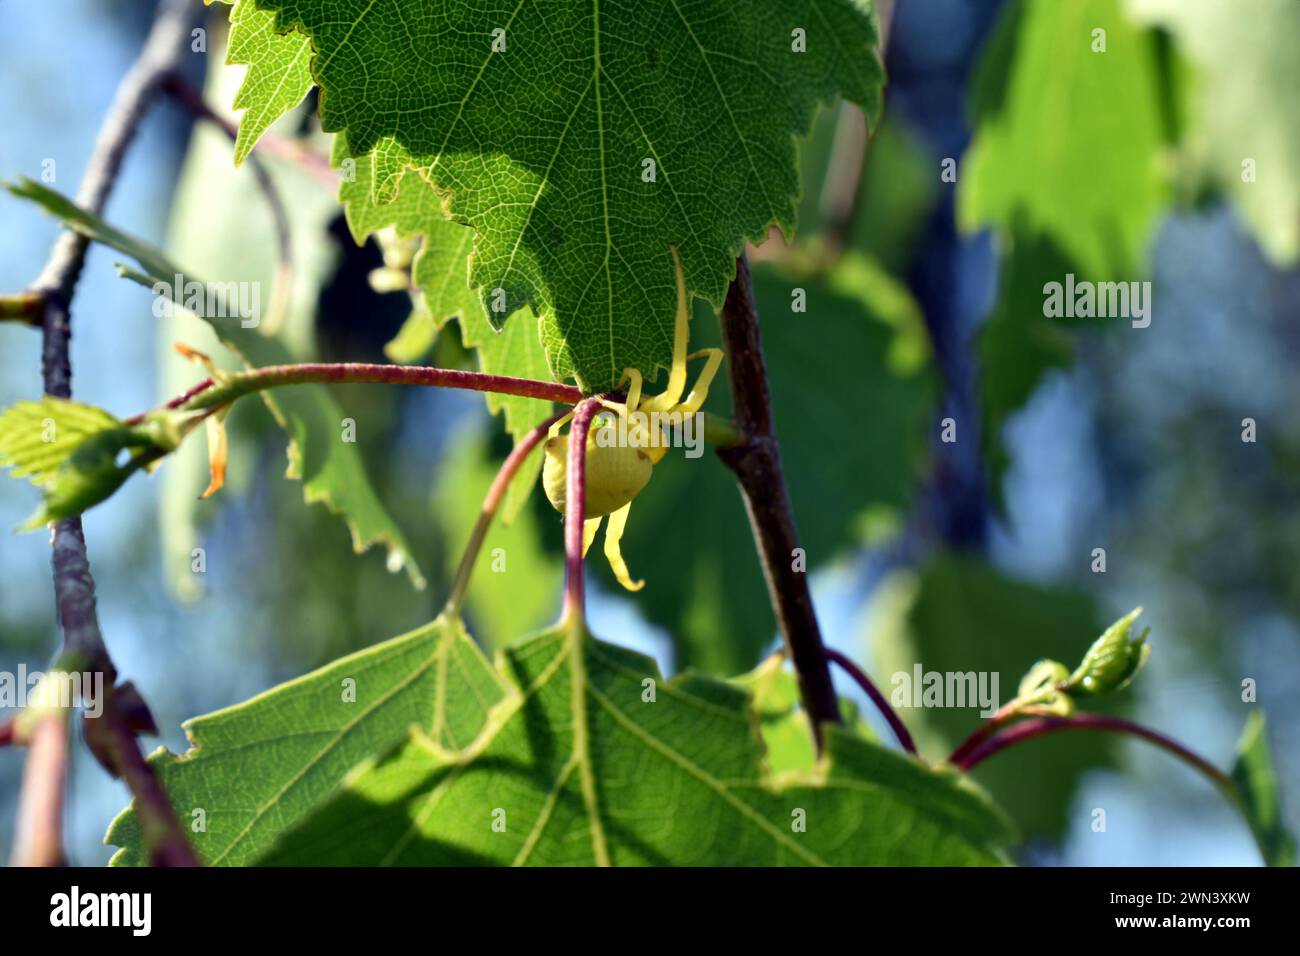 Una araña de flores amarillas se escondió entre las hojas en una rama de árbol y está esperando a su víctima. Foto de stock